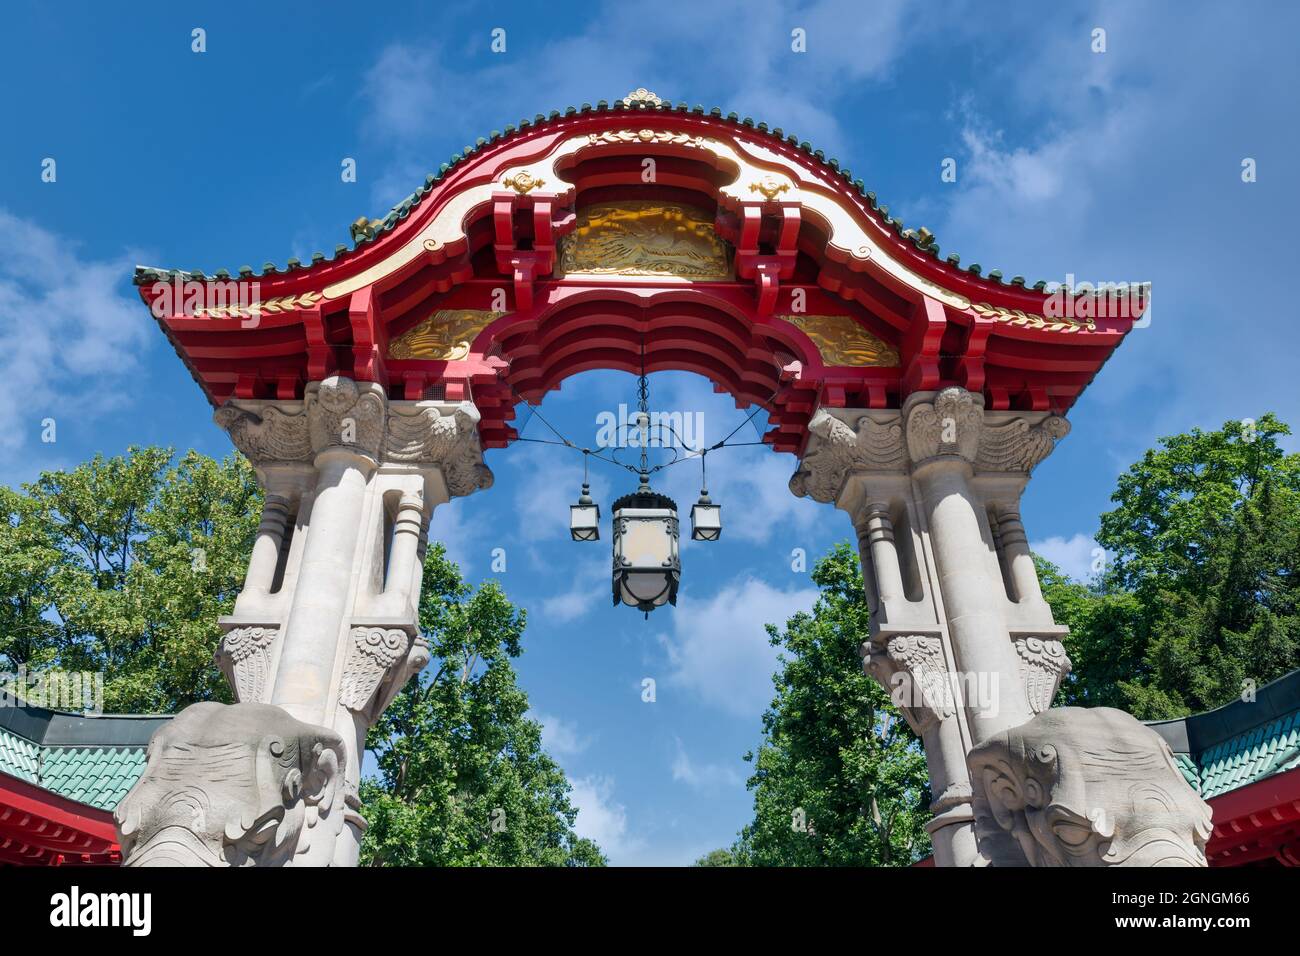 Berühmter Berliner Zoo mit rotem Dach und Elefantenstatuen Stockfoto